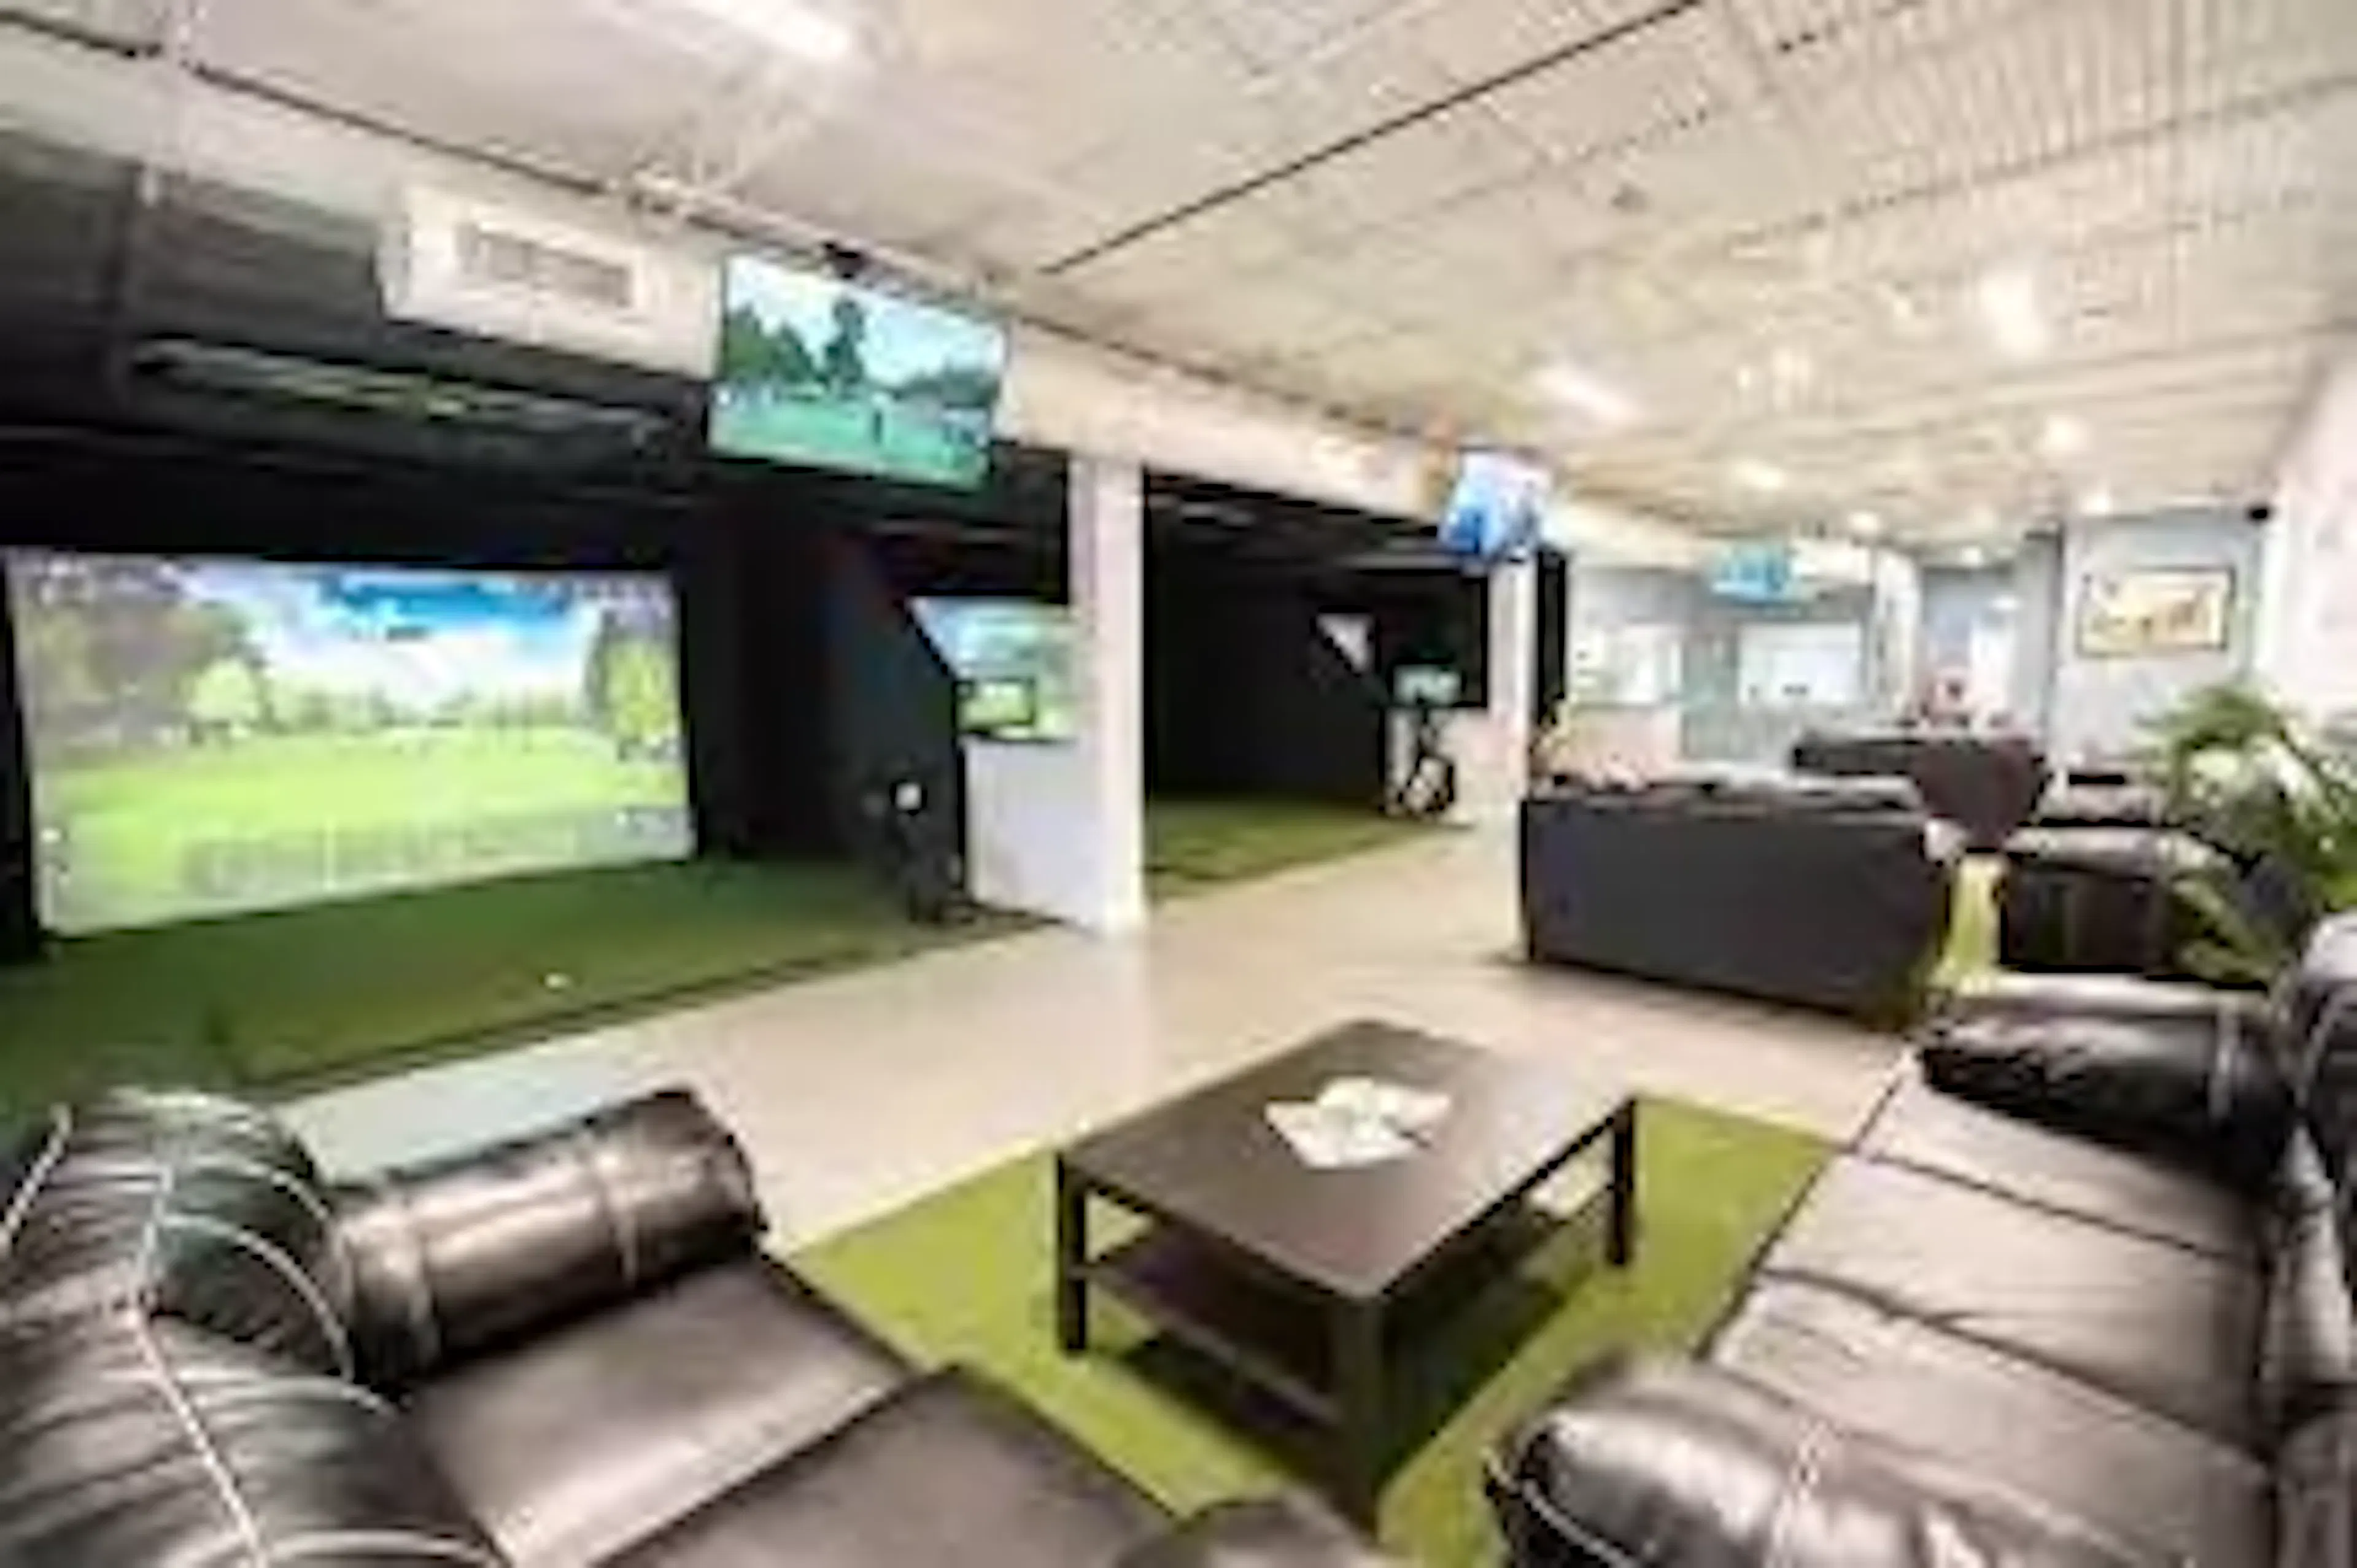 lauderdale links - golf simulator and social club